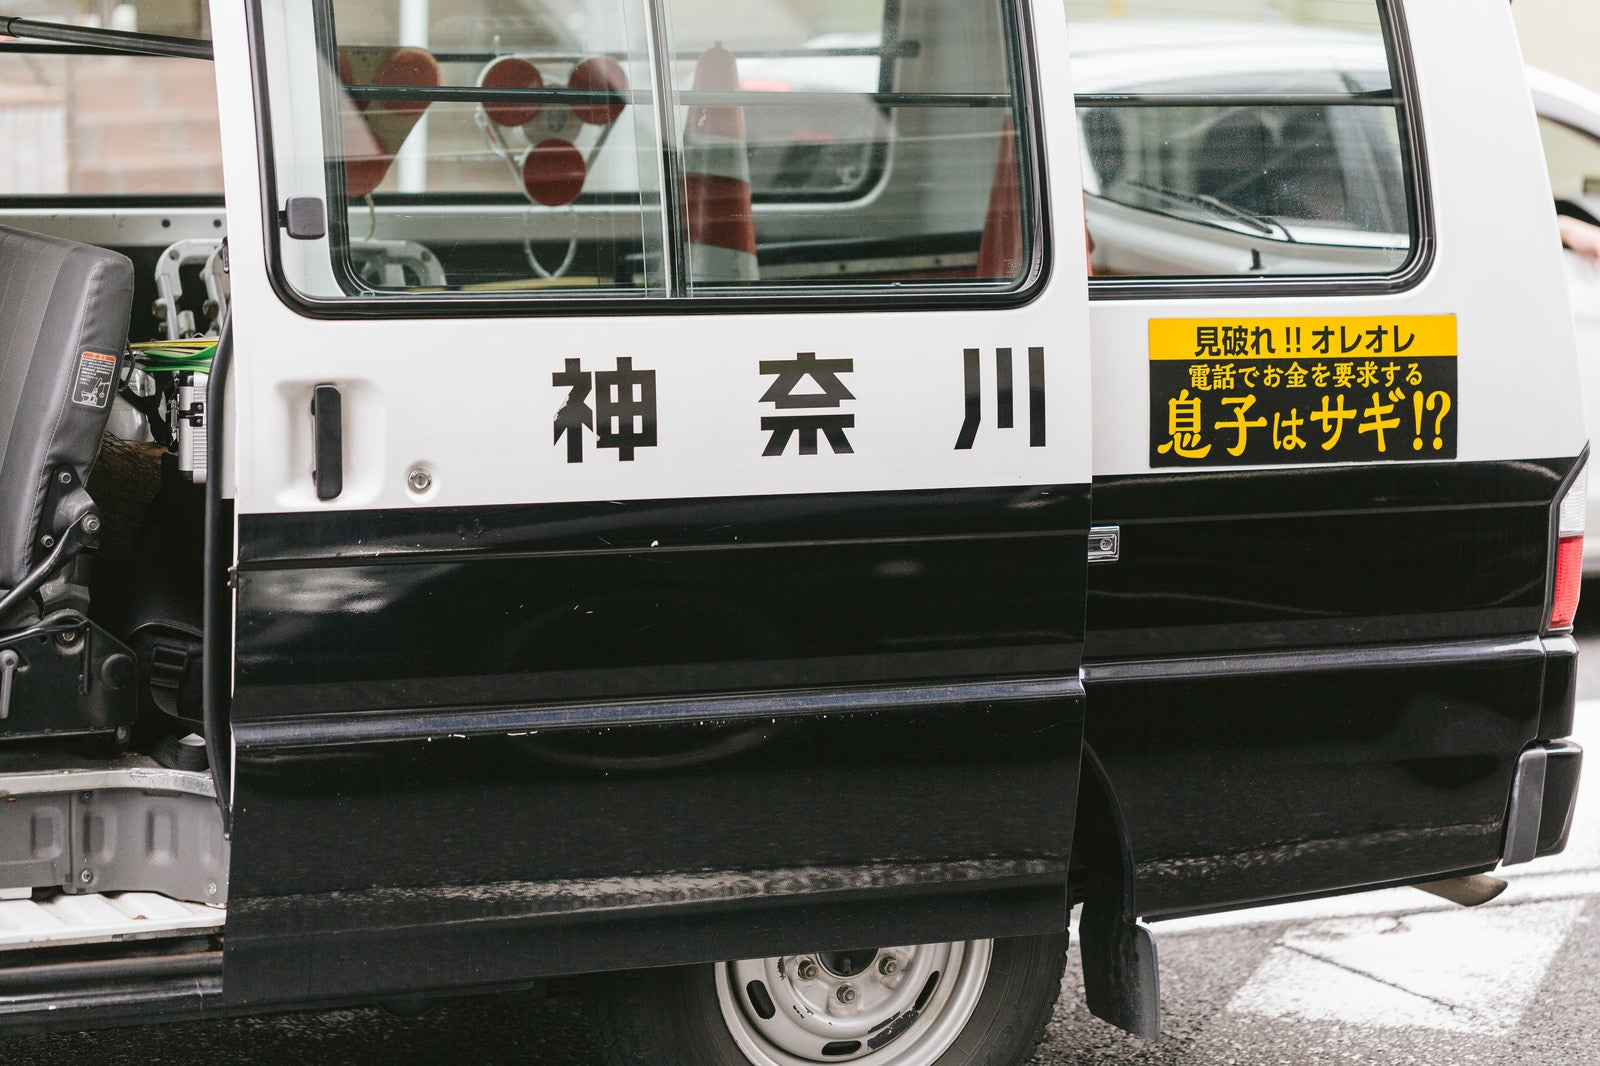 「神奈川県警察の車両（ワゴン）」の写真